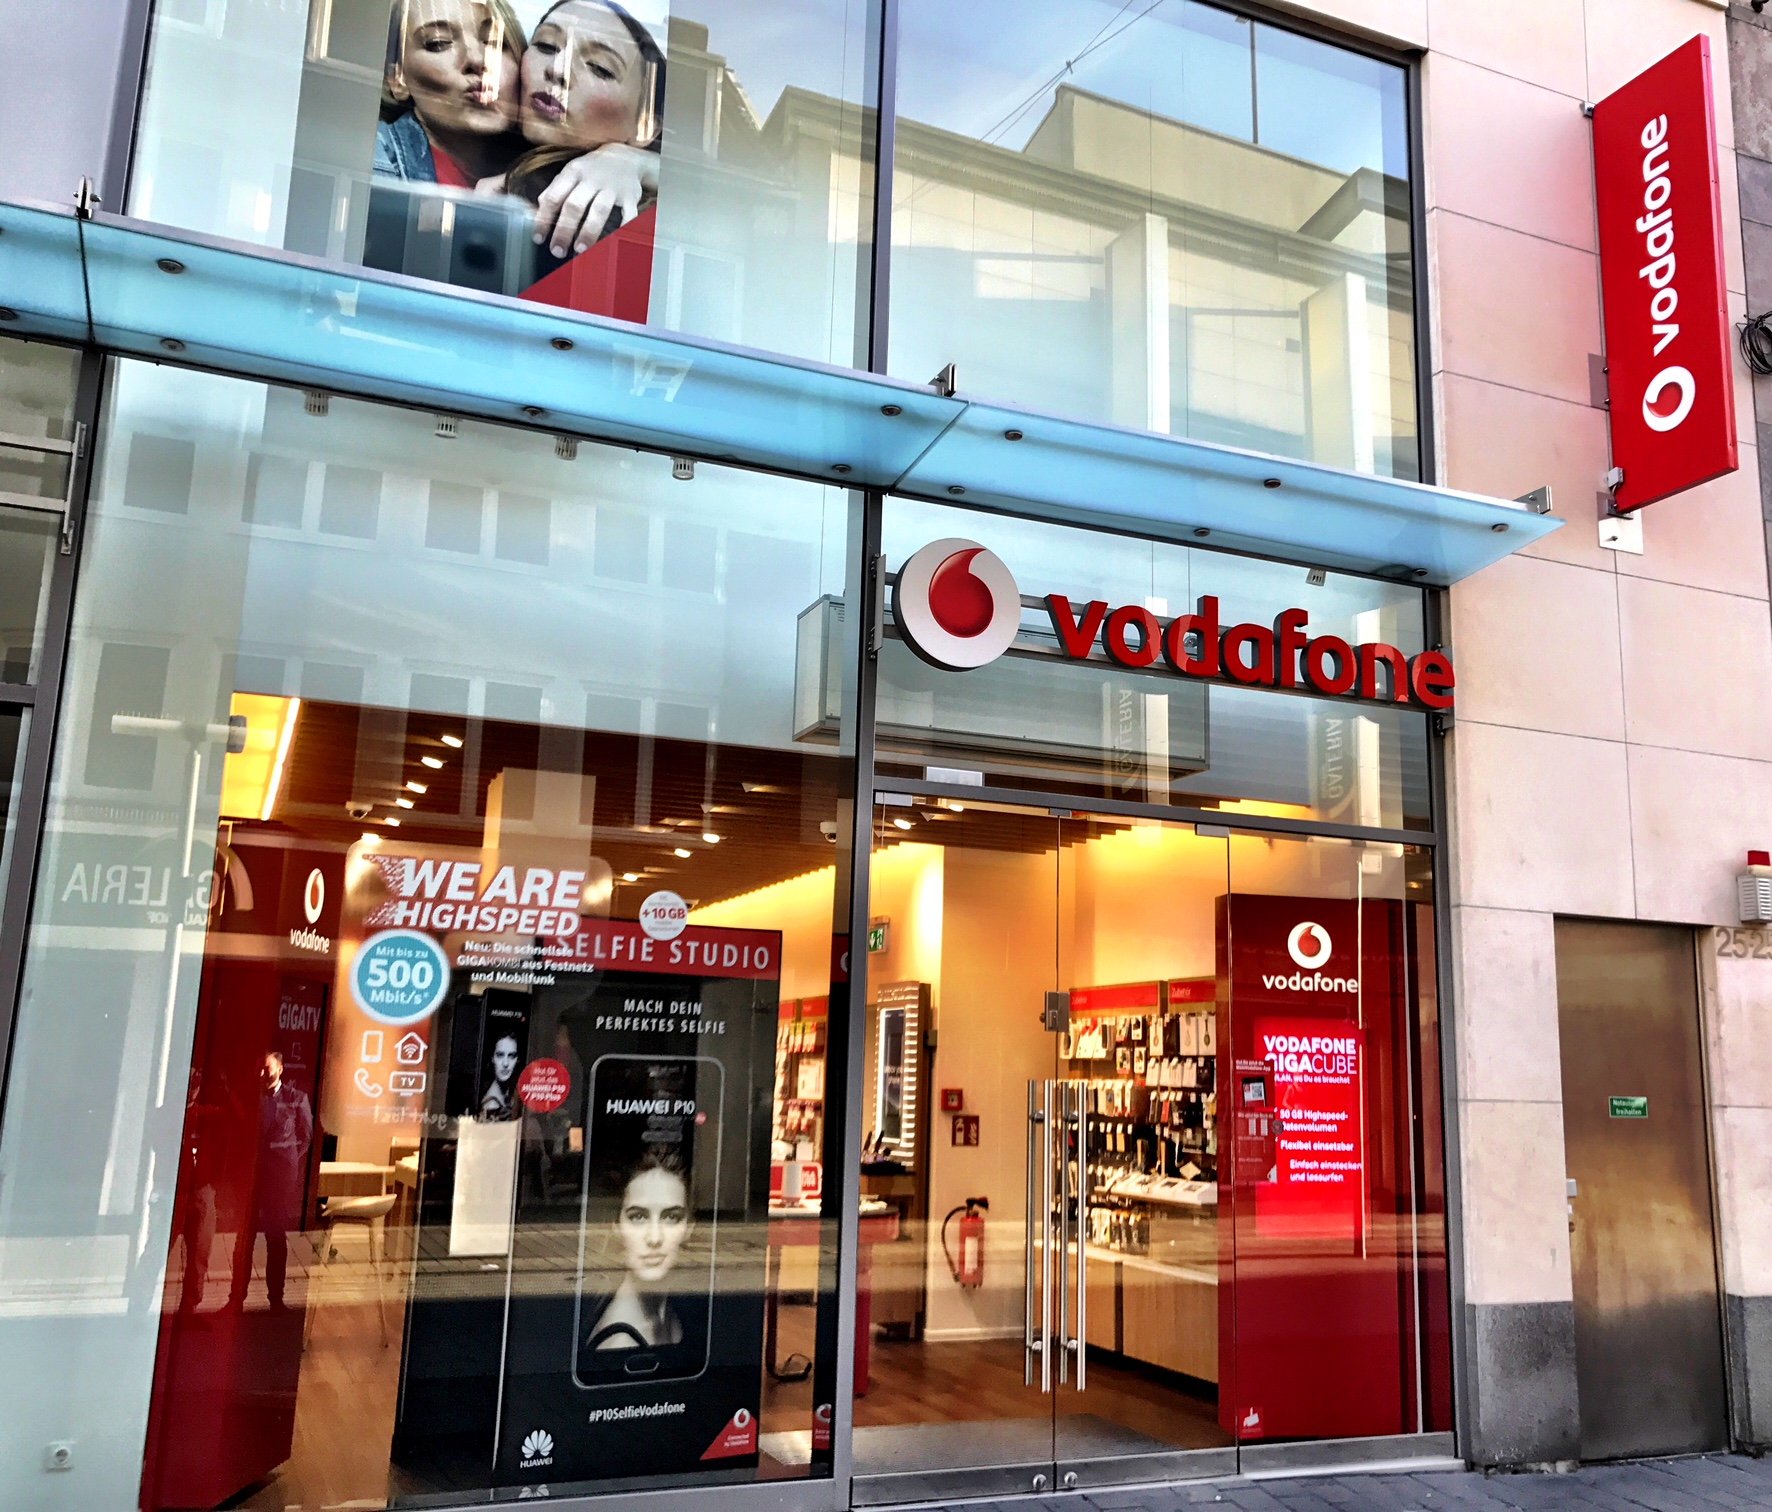 Vodafone-Shop in Aachen, Adalbertstr. 25a